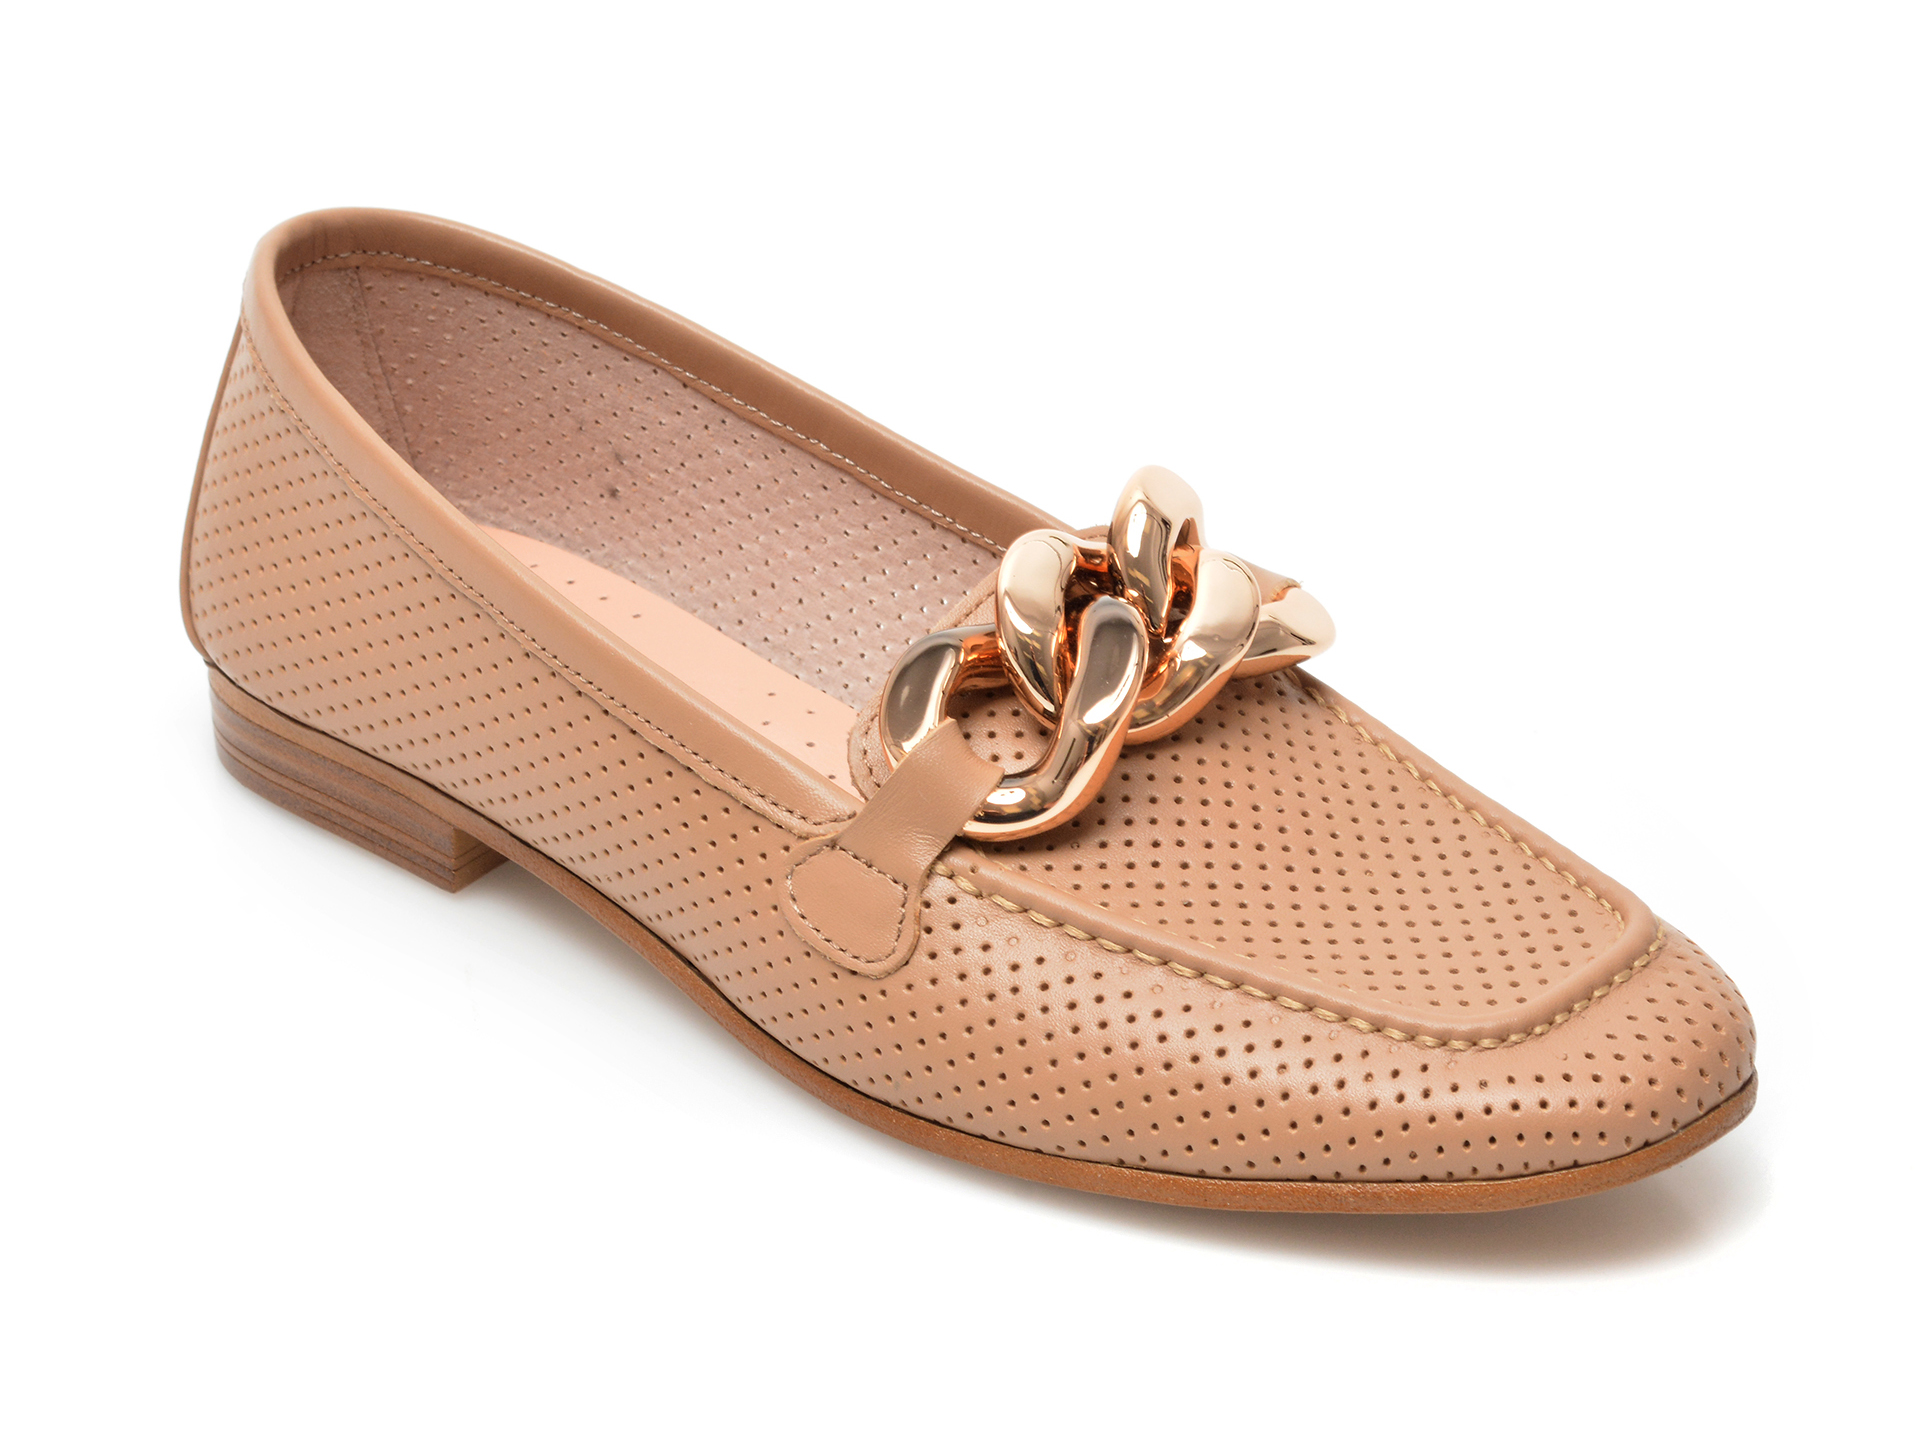 Pantofi FLAVIA PASSINI maro, 8798, din piele naturala Flavia Passini